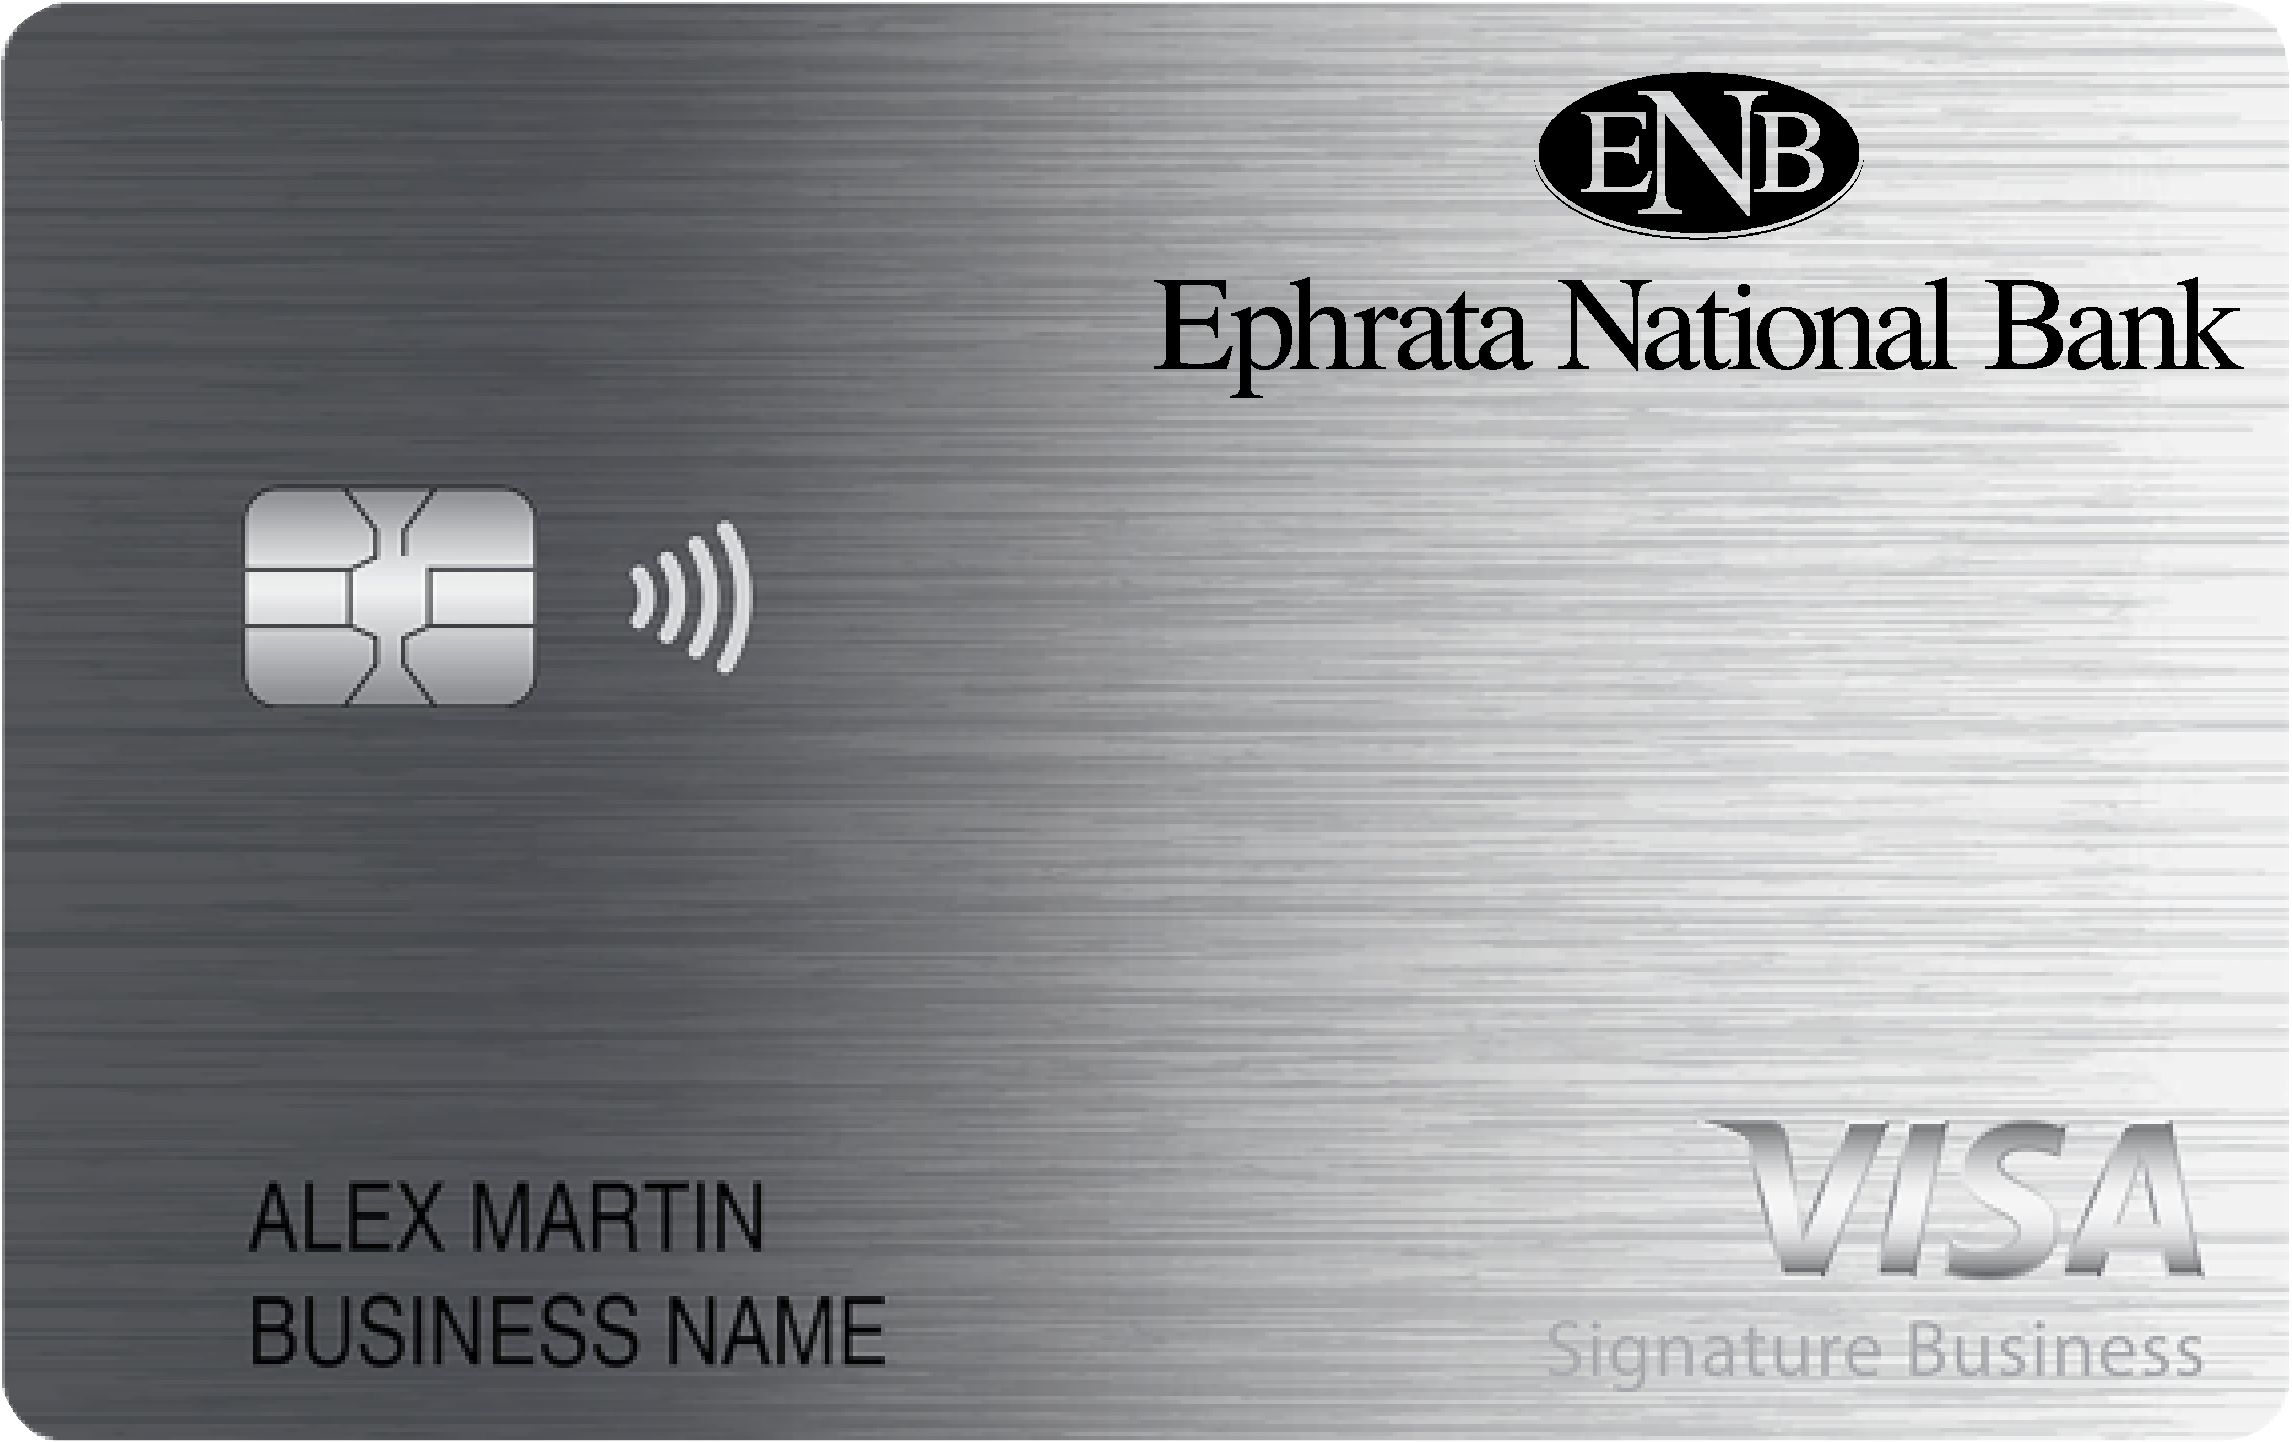 Ephrata National Bank Smart Business Rewards Card